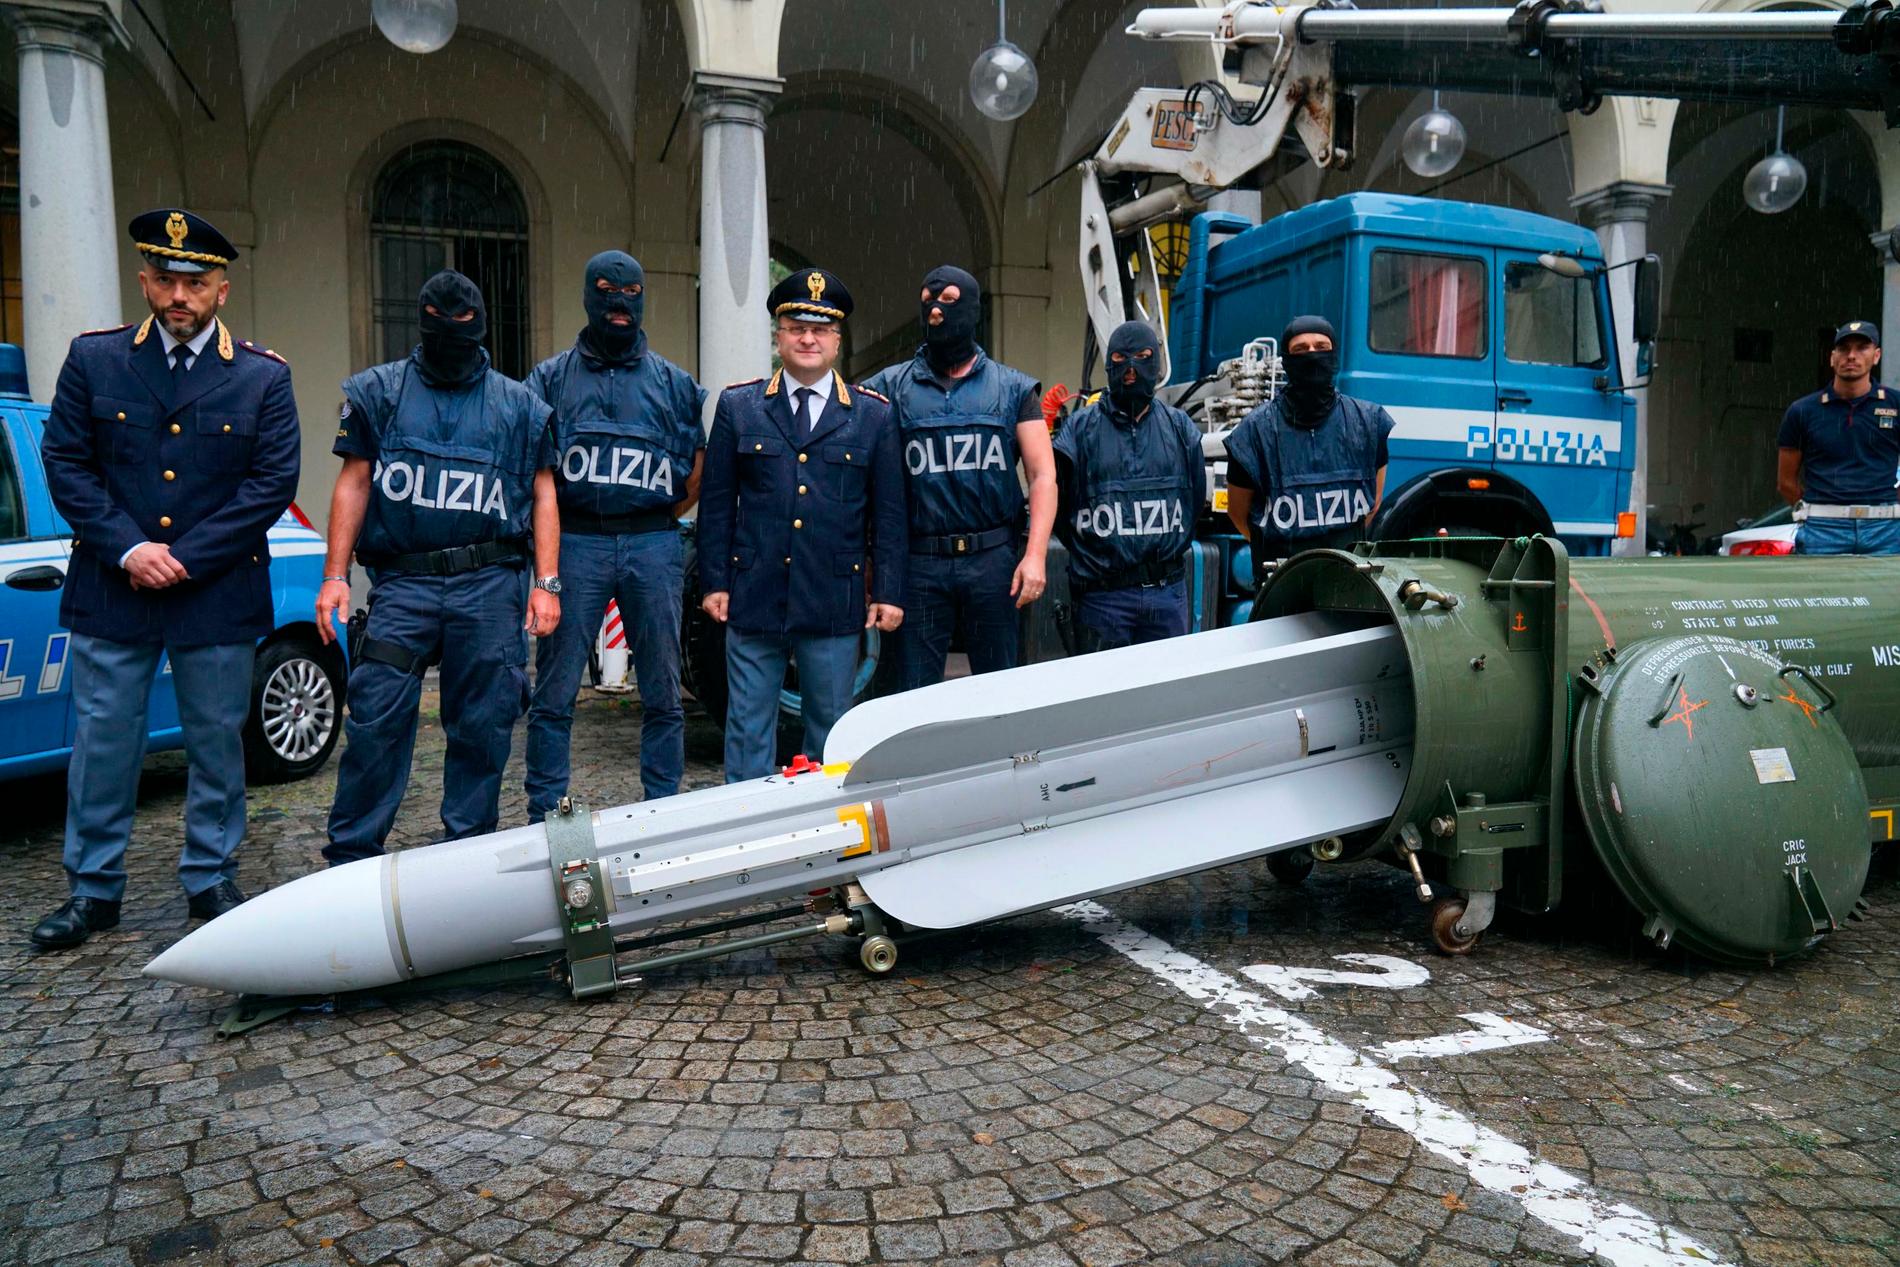 Italiensk polis uppställda vid den jaktrobot, som beslagstogs i samband med att man genomförde flera räder mot högerextrema grupper runt om i landet.